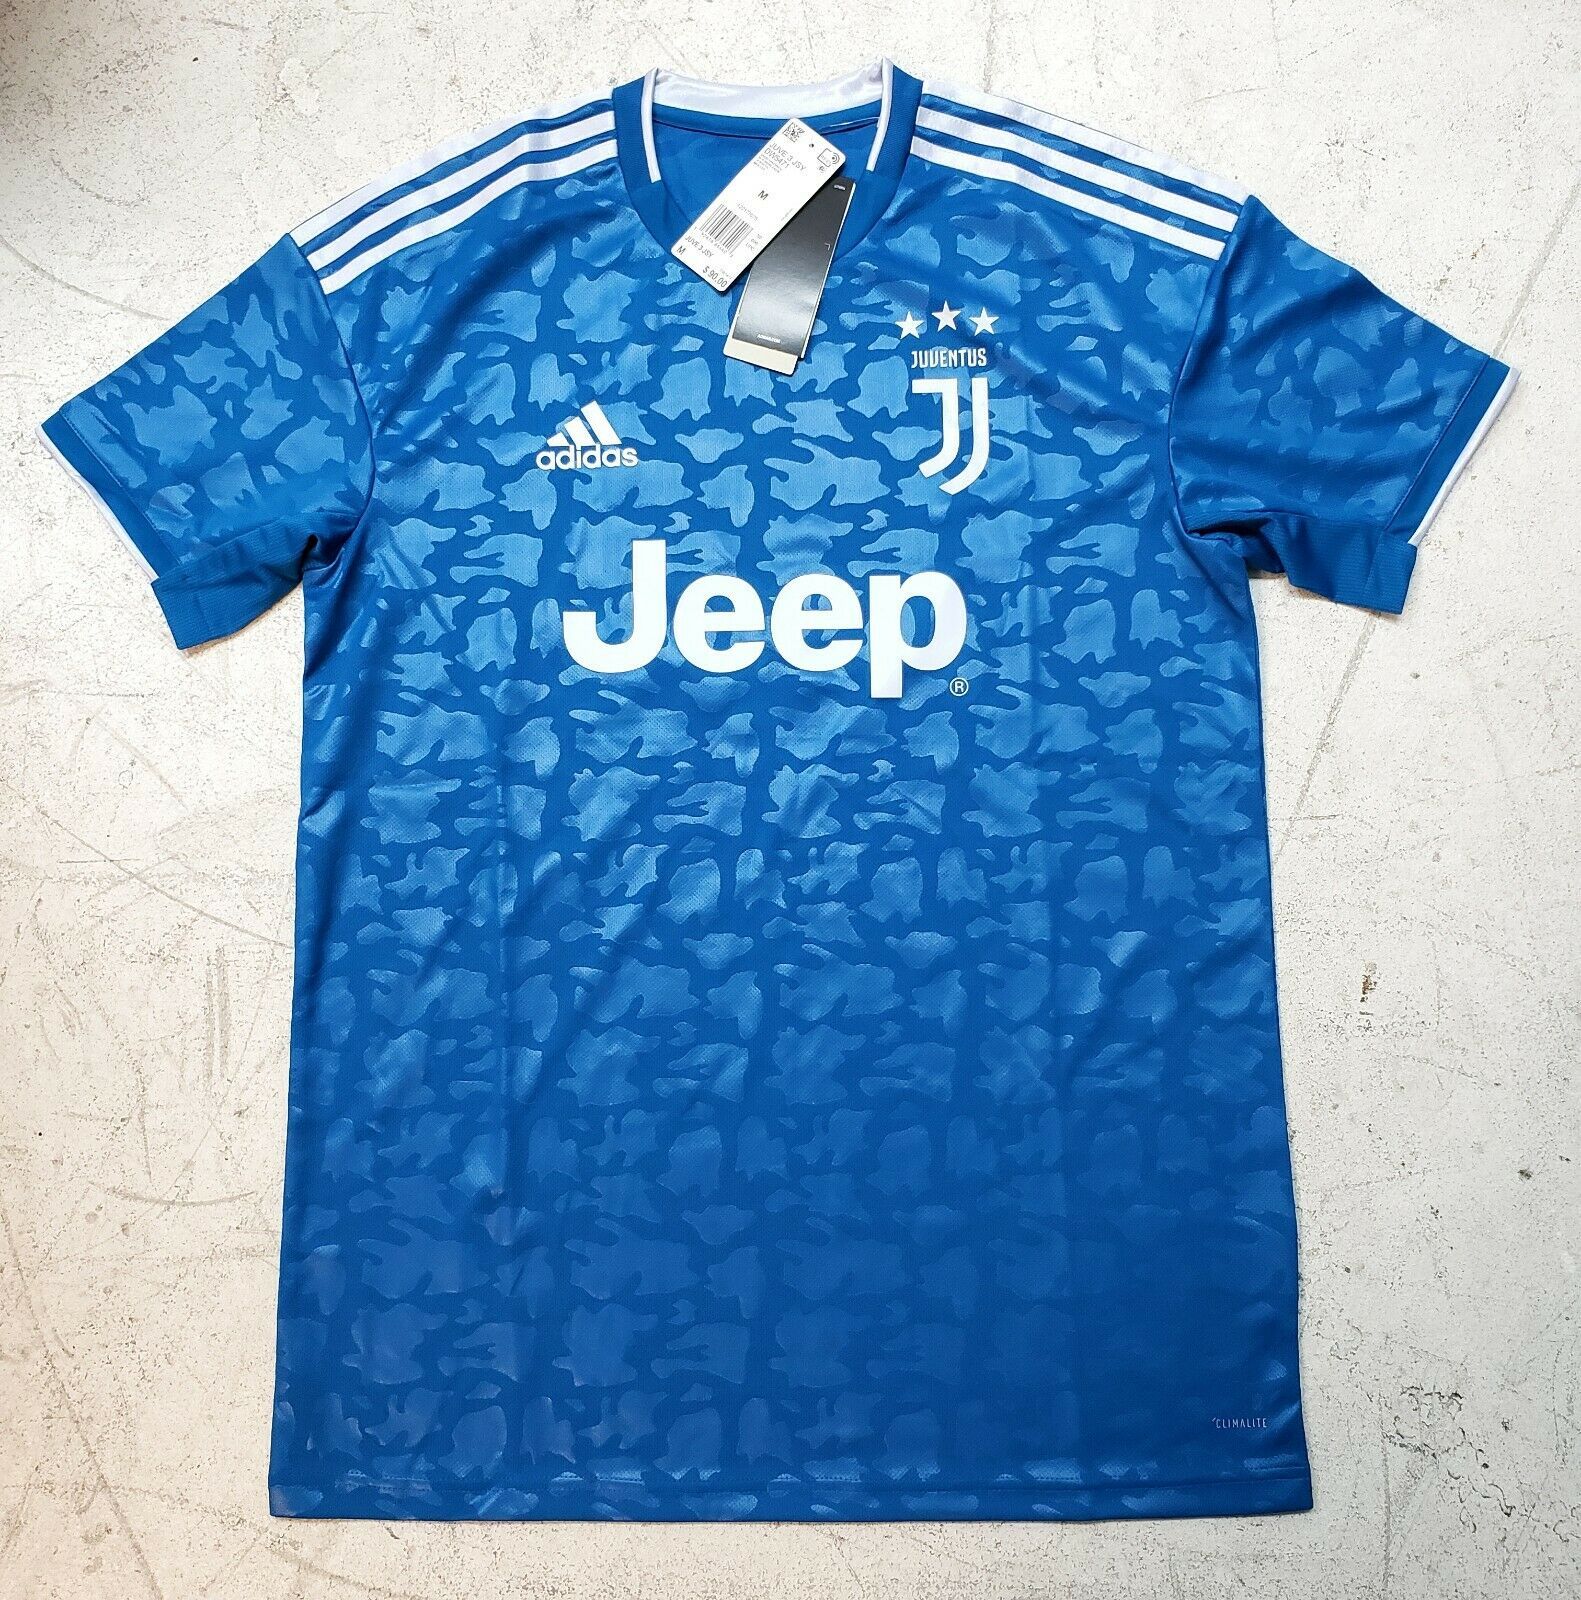 Adidas Juventus Third Jersey 2019/2020 Season - Men